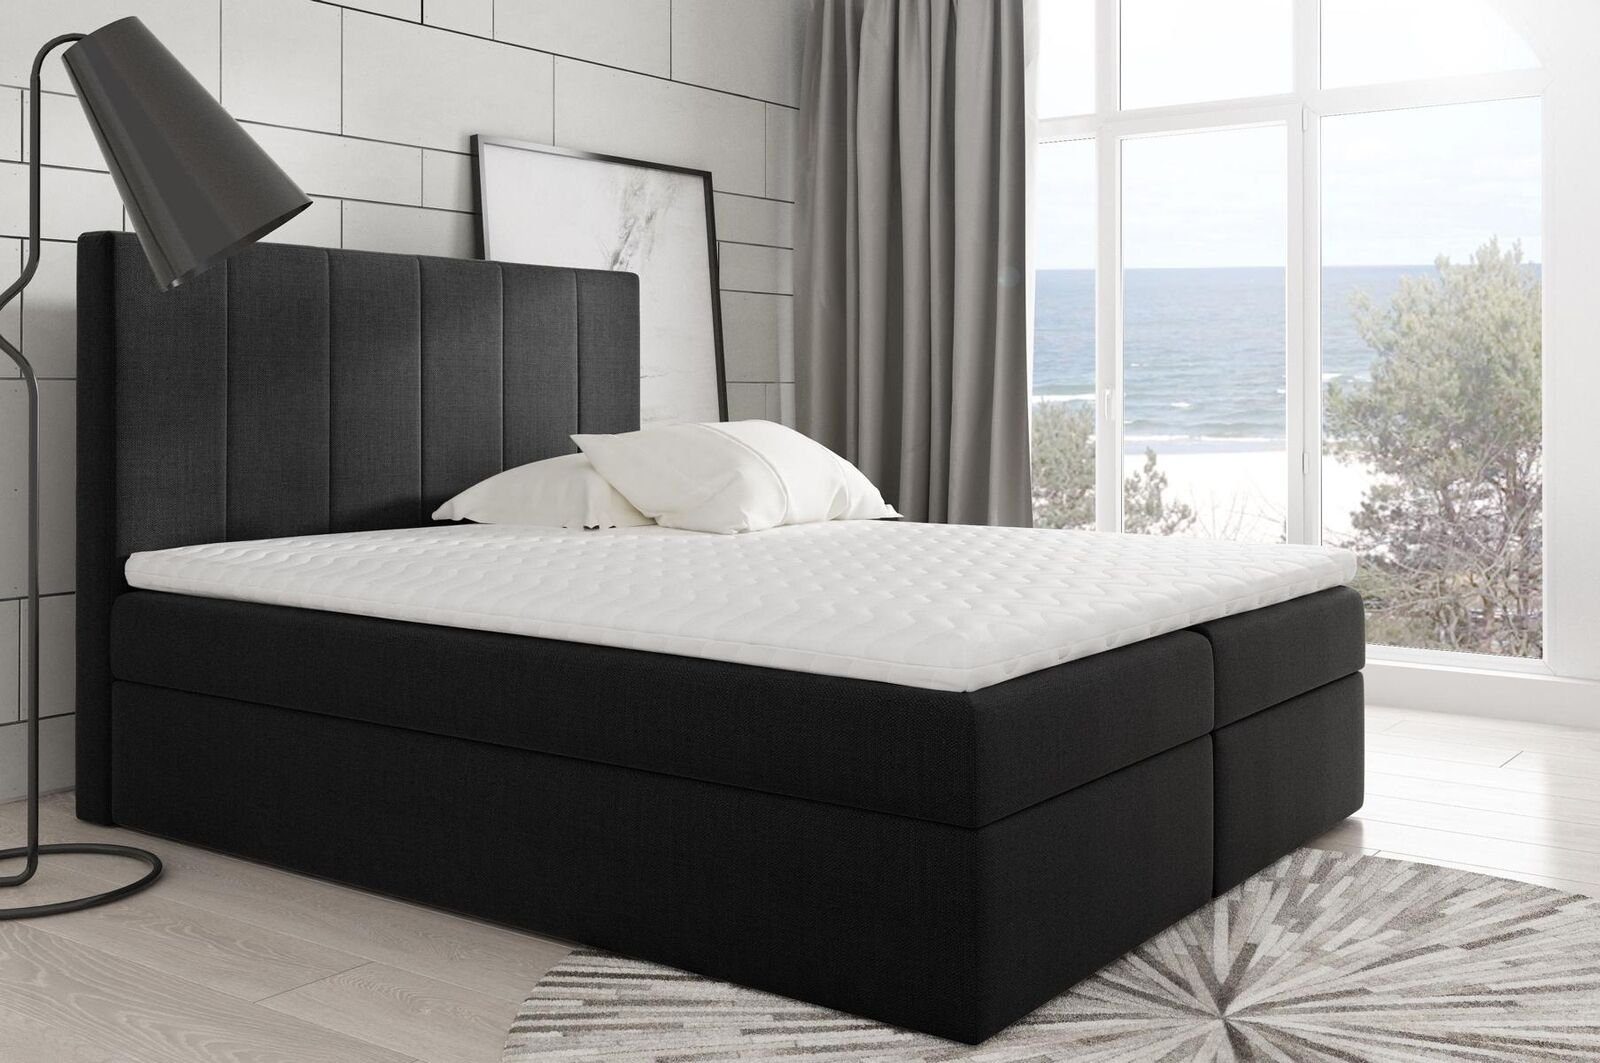 JVmoebel Bett, Modernes Bett Schlafzimmer Schwarz Stoff Betten Textil Design Boxspringbett